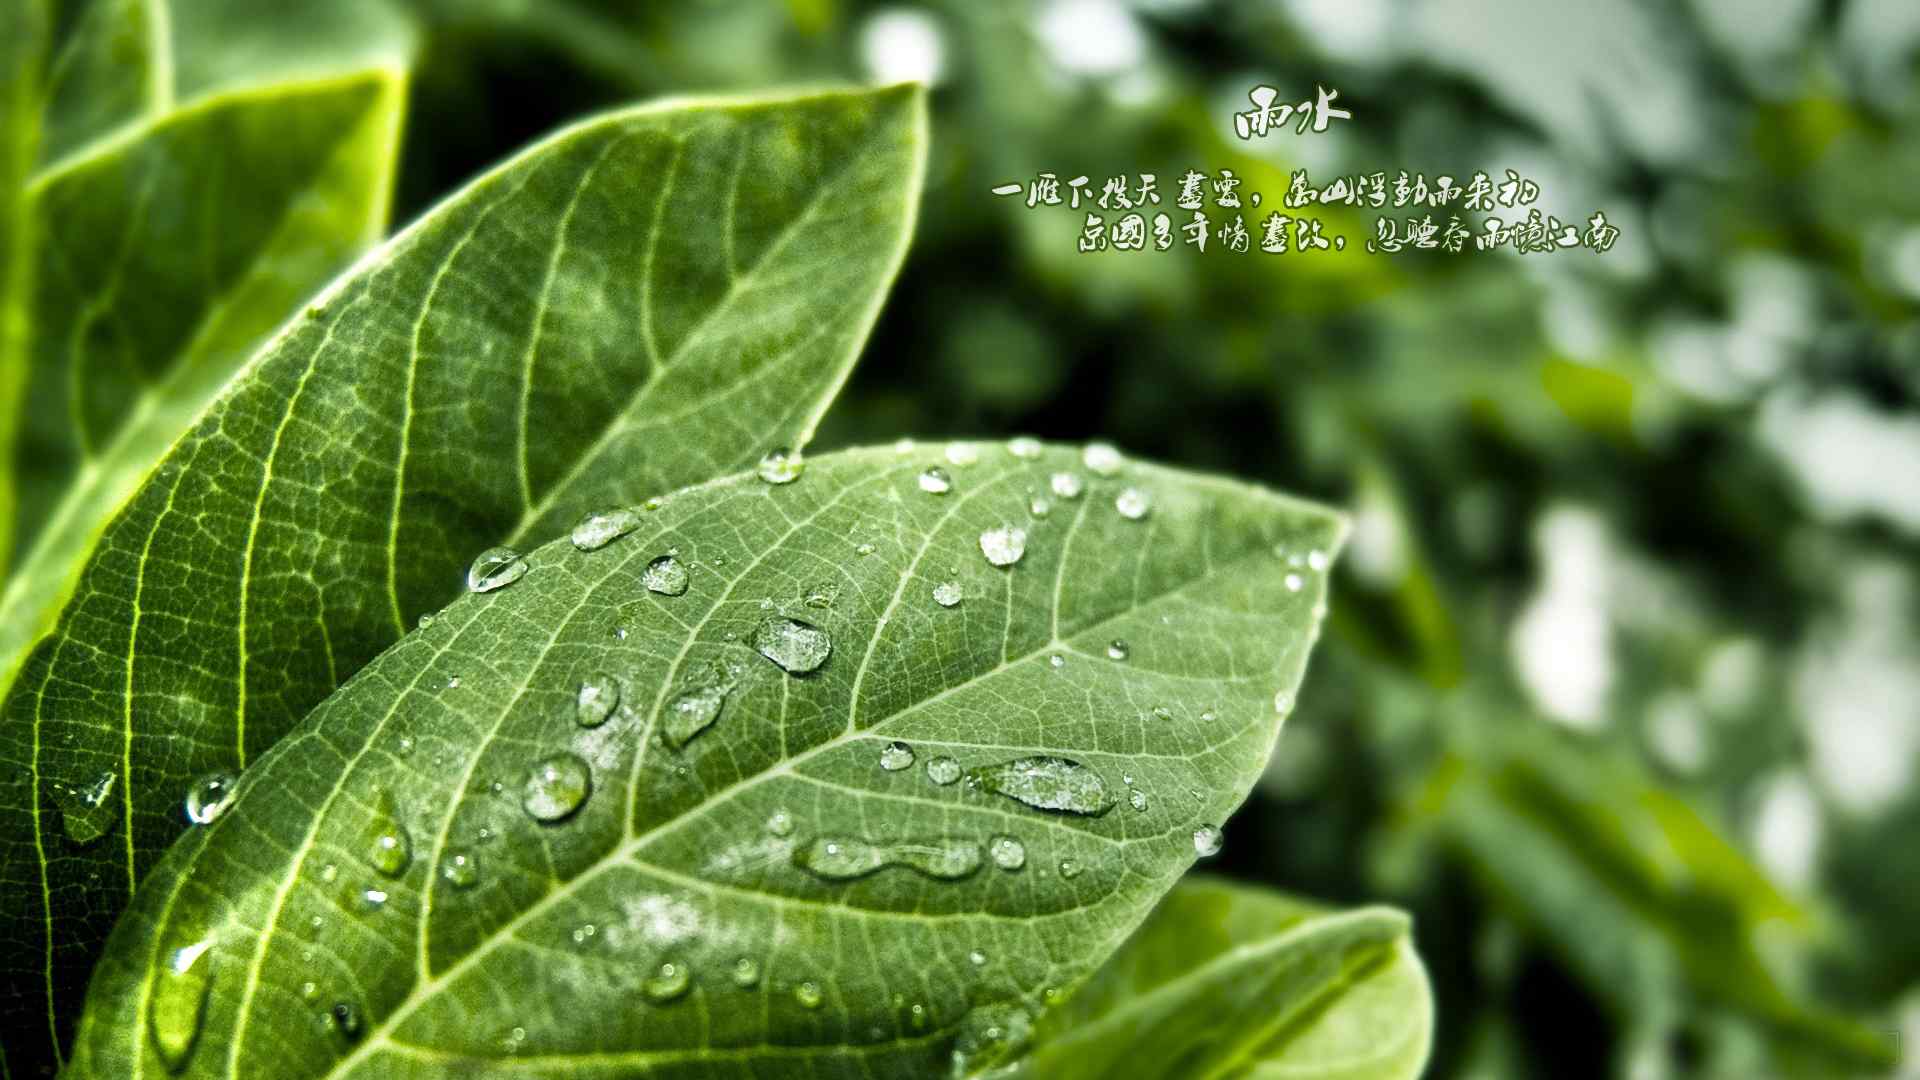 雨水节气-落在绿叶上的雨滴壁纸图片